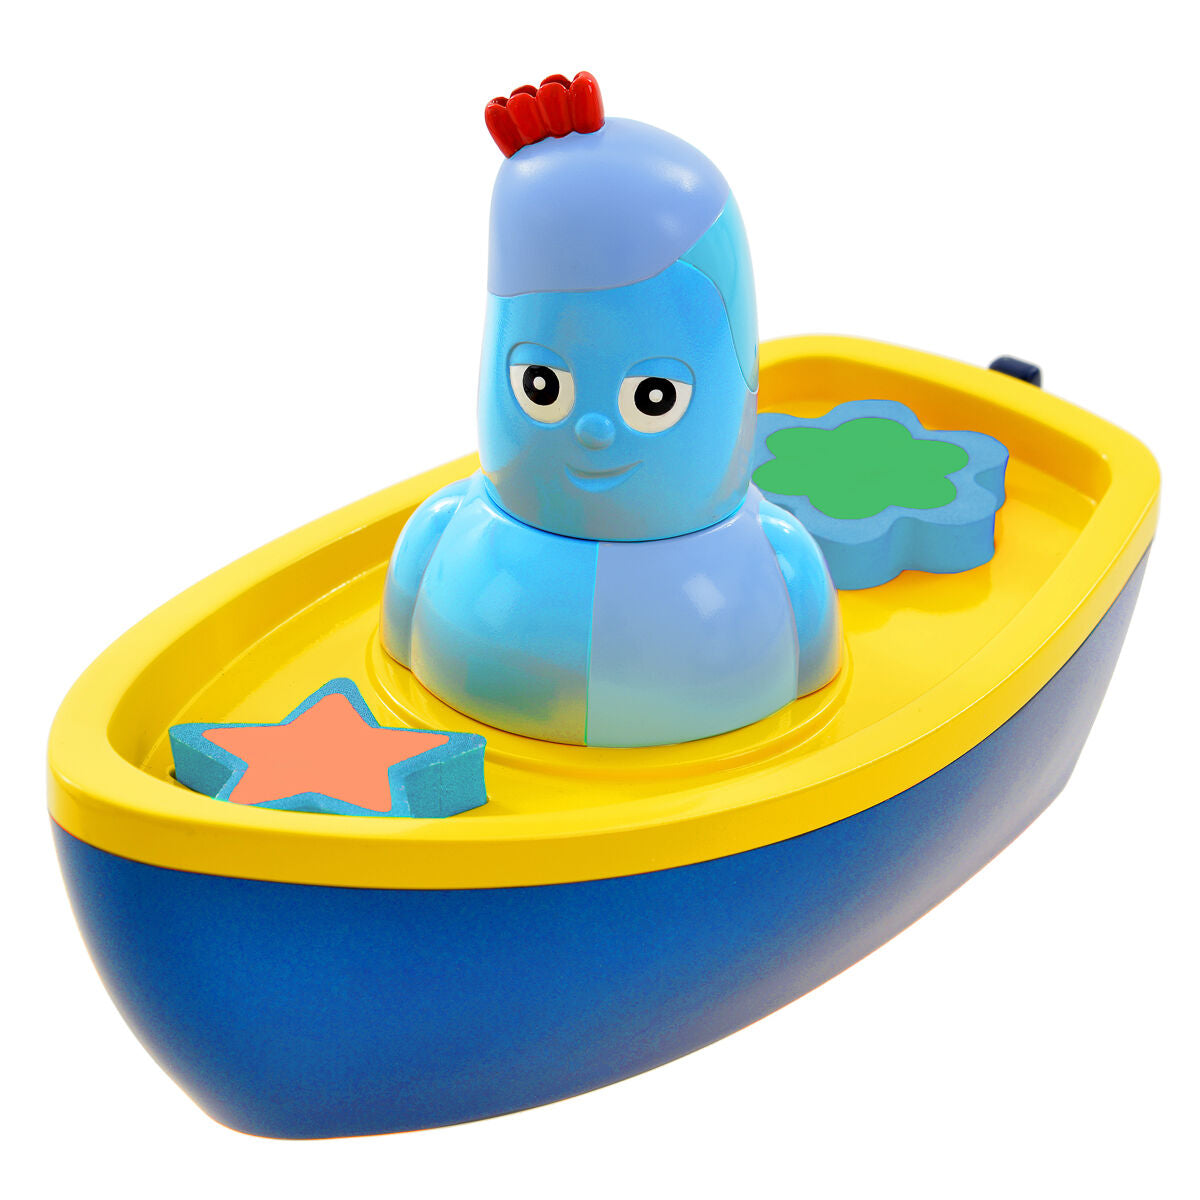 igglepiggle's bedtime boat